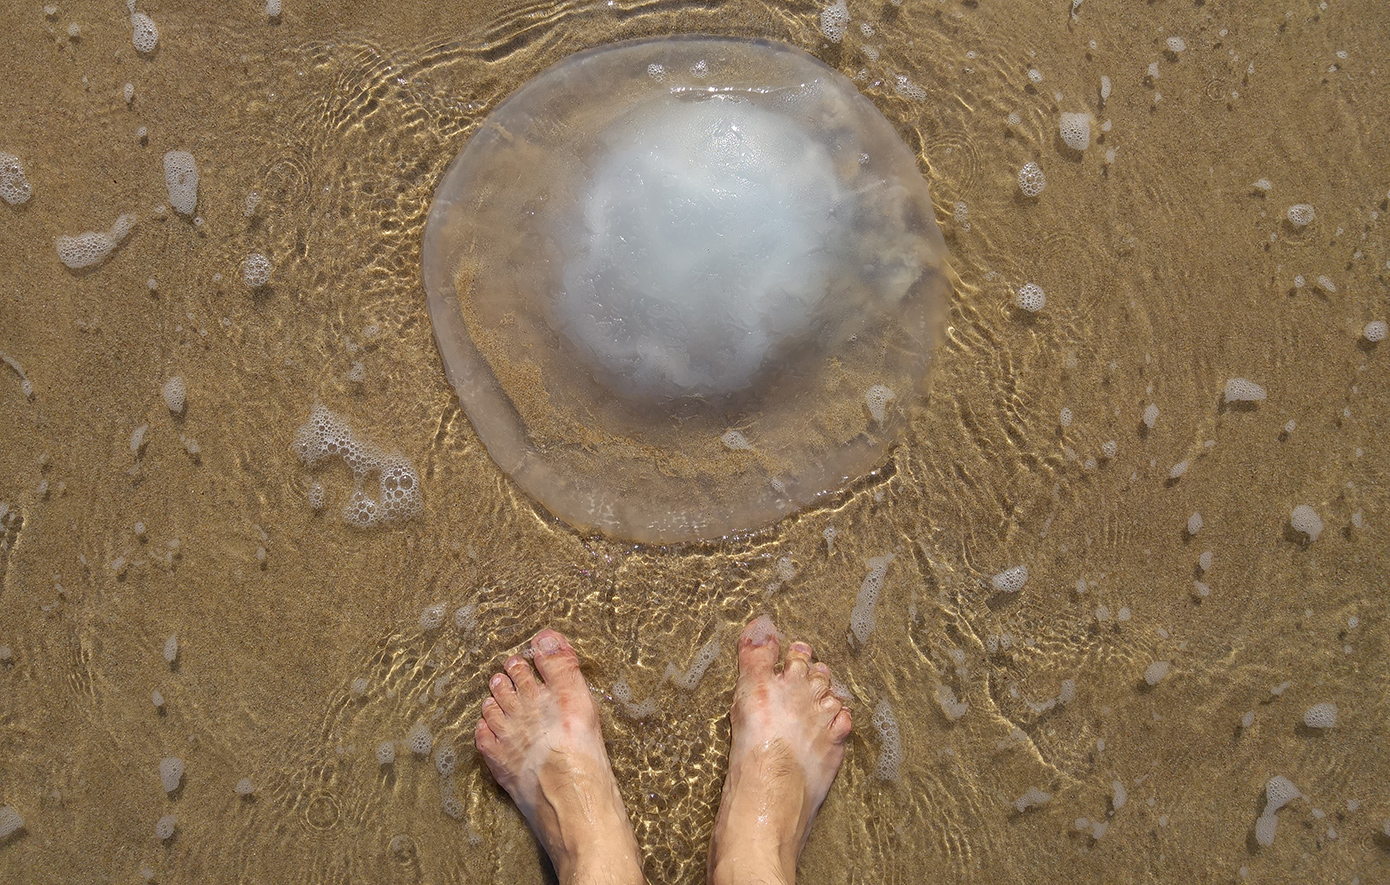 Μέδουσες-γίγαντες από την Ερυθρά Θάλασσα σε παραλίες της Ρόδου &#8211; Τι λέει ειδικός, τον ανησυχεί η εμφάνισή τους;